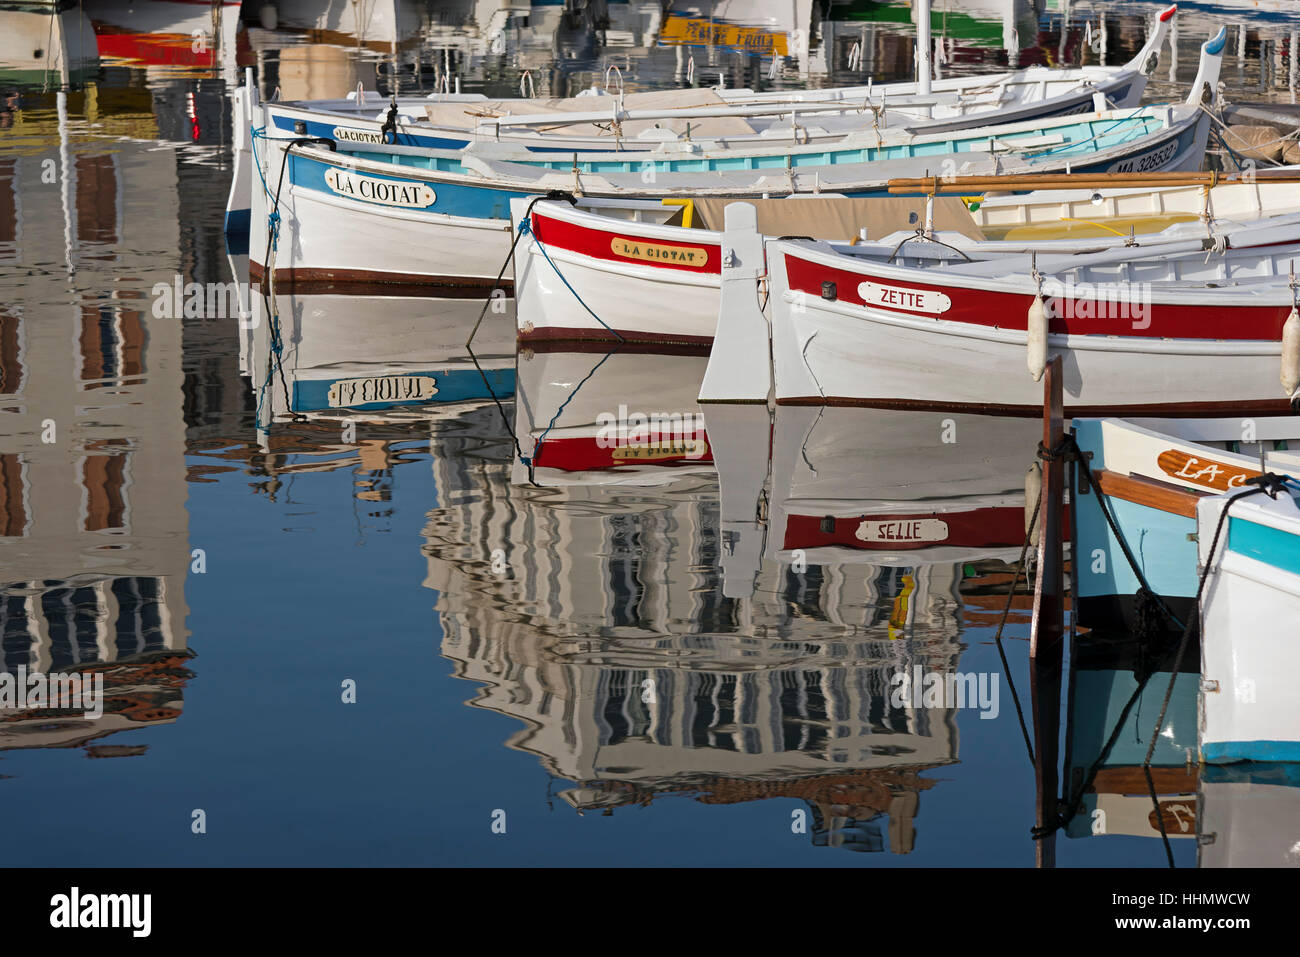 Bateaux dans le port par des réflexions de bâtiments, La Ciotat, Provence-Alpes-Côte d'Azur, France Banque D'Images